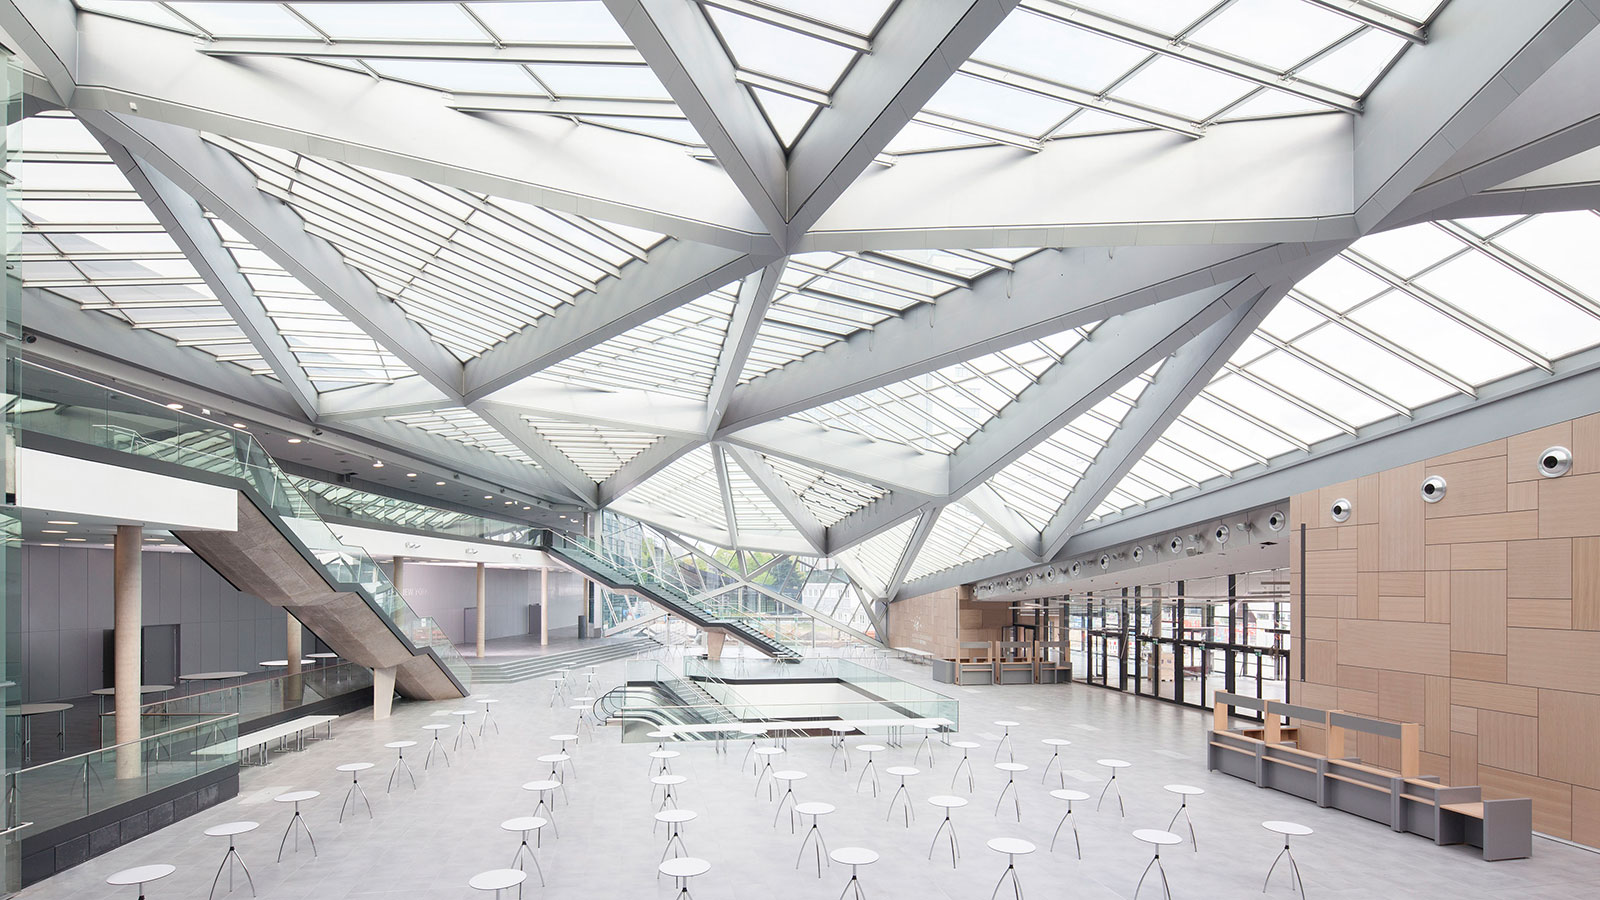 Profilbild der Lamparter GmbH & Co. KG in Kaufungen. Ein riesiges Stahl-Glas-Dach repräsentiert die Fähigkeiten des Unternehmens im Stahlbau und Metallbau.